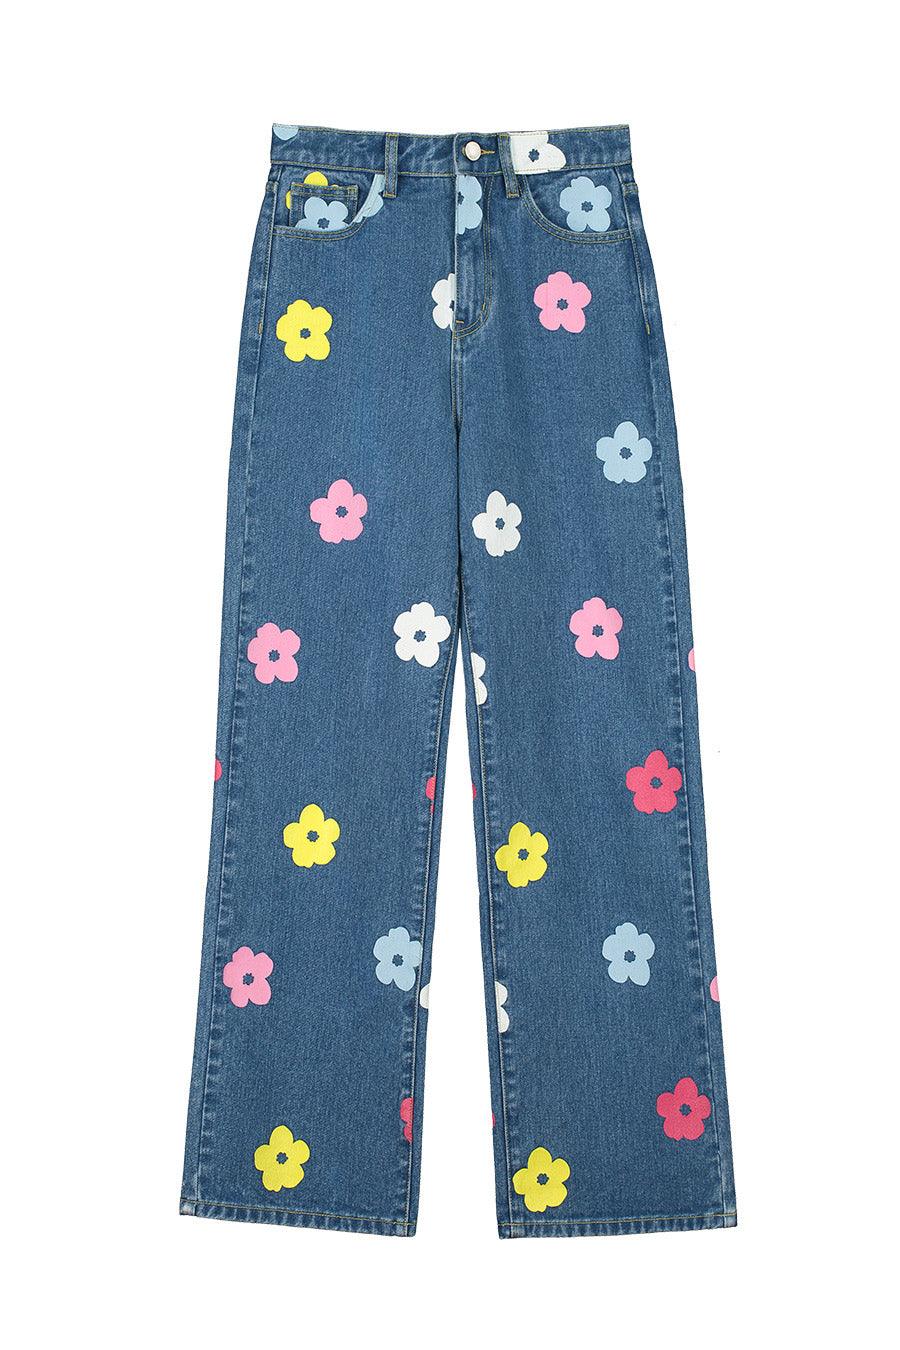 Jeans tiro alto flores - ECRU